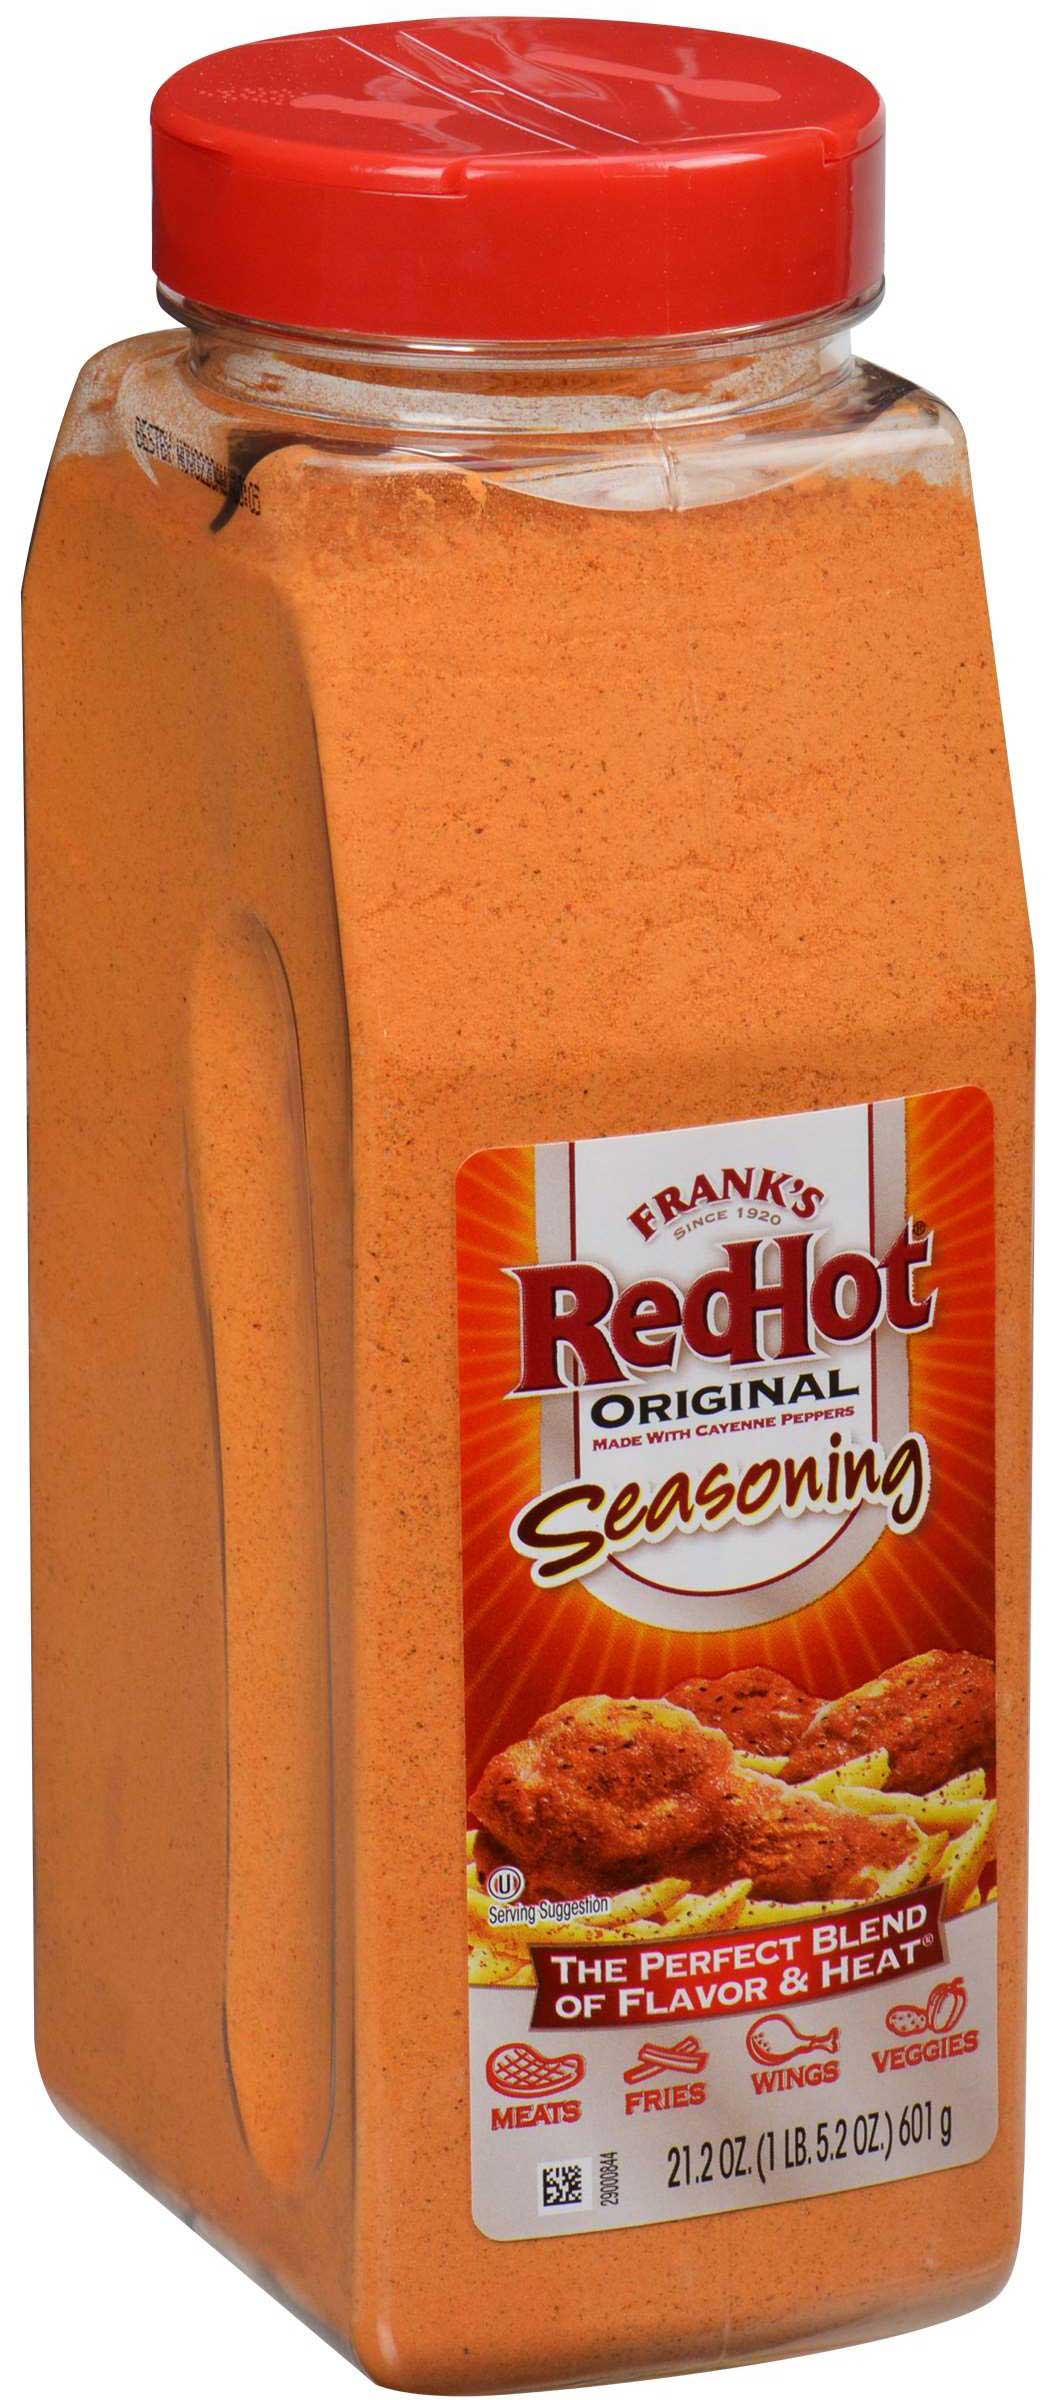 Franks Redhot Original Seasoning, 21.2 Ounce -- 6 per case